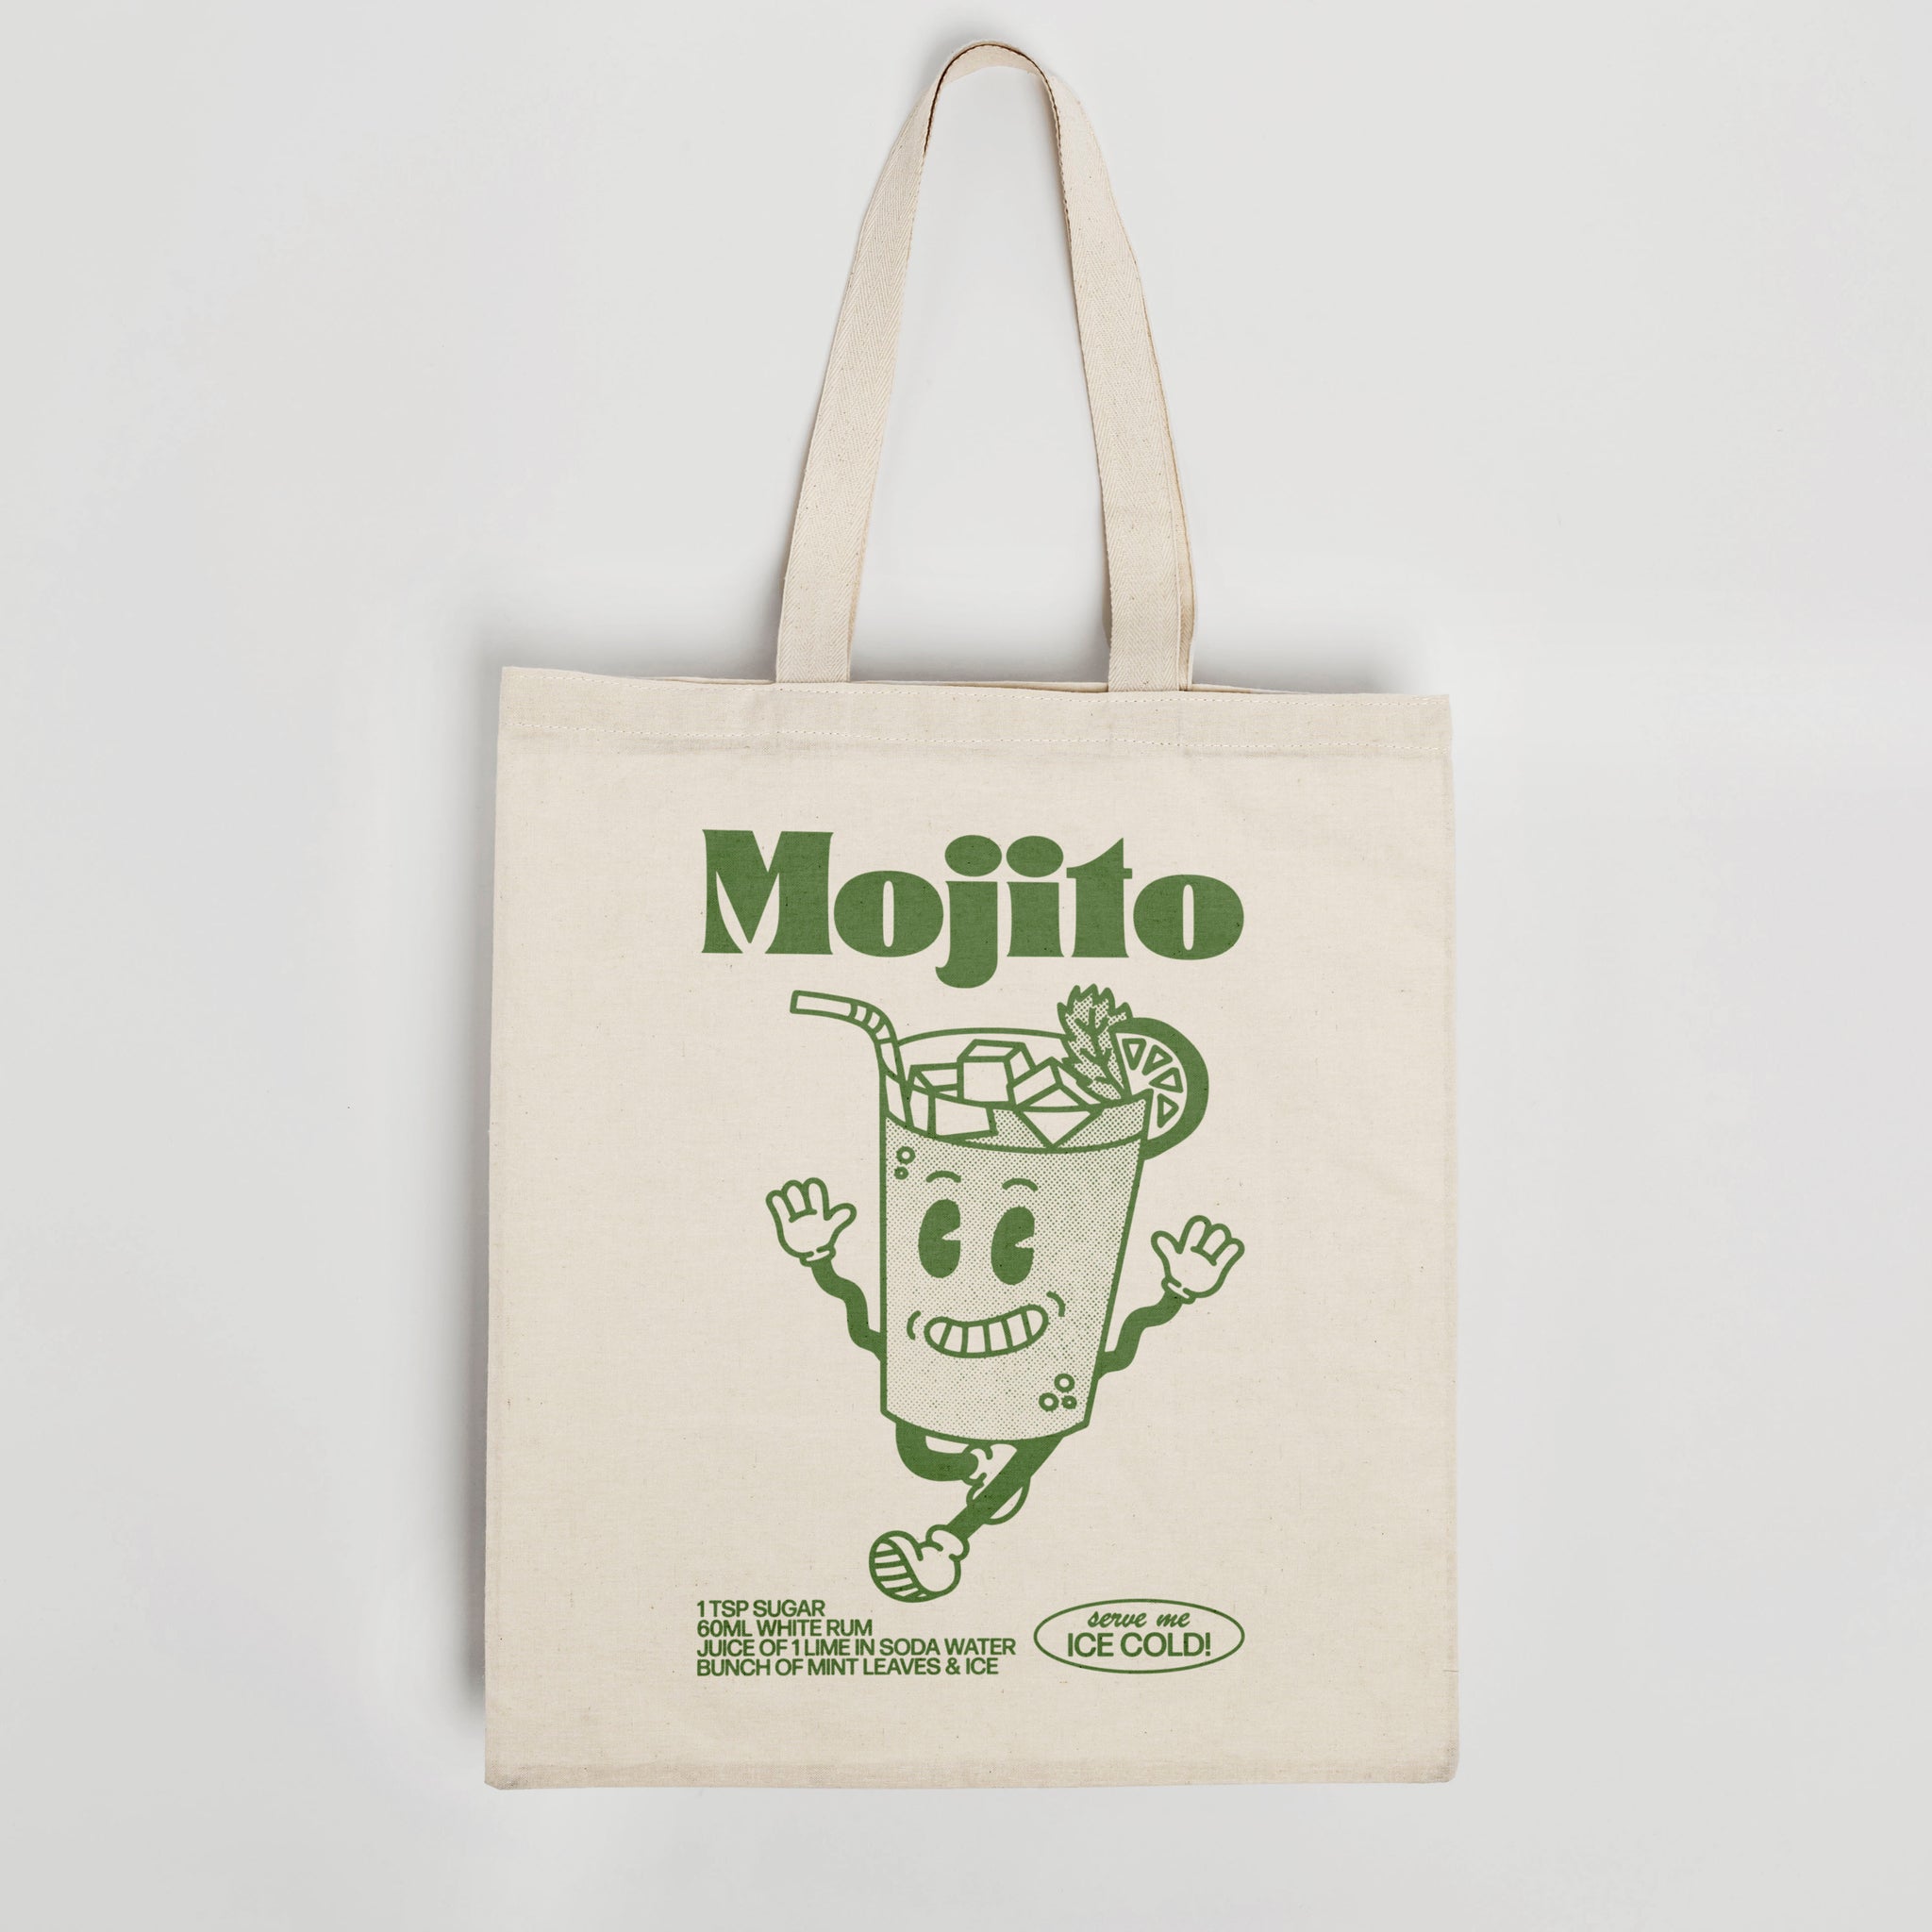 'Mojito' organic cotton canvas tote  bag